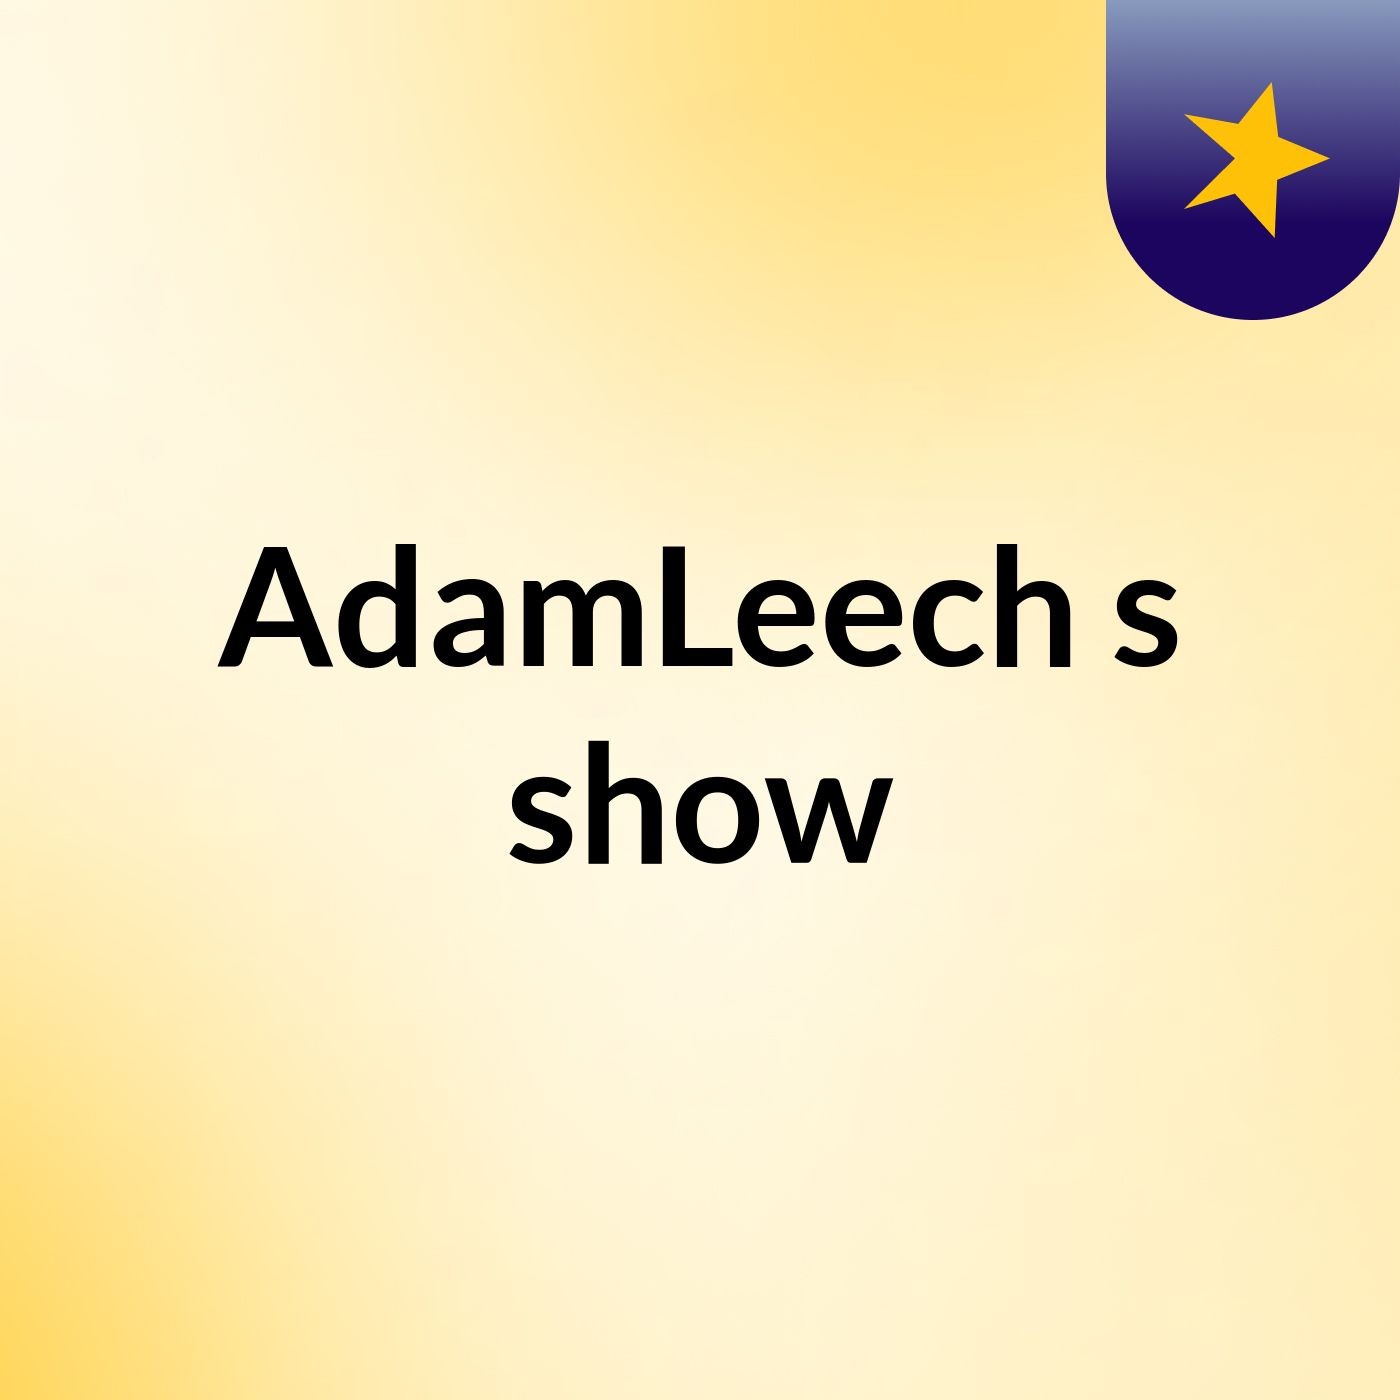 AdamLeech's show